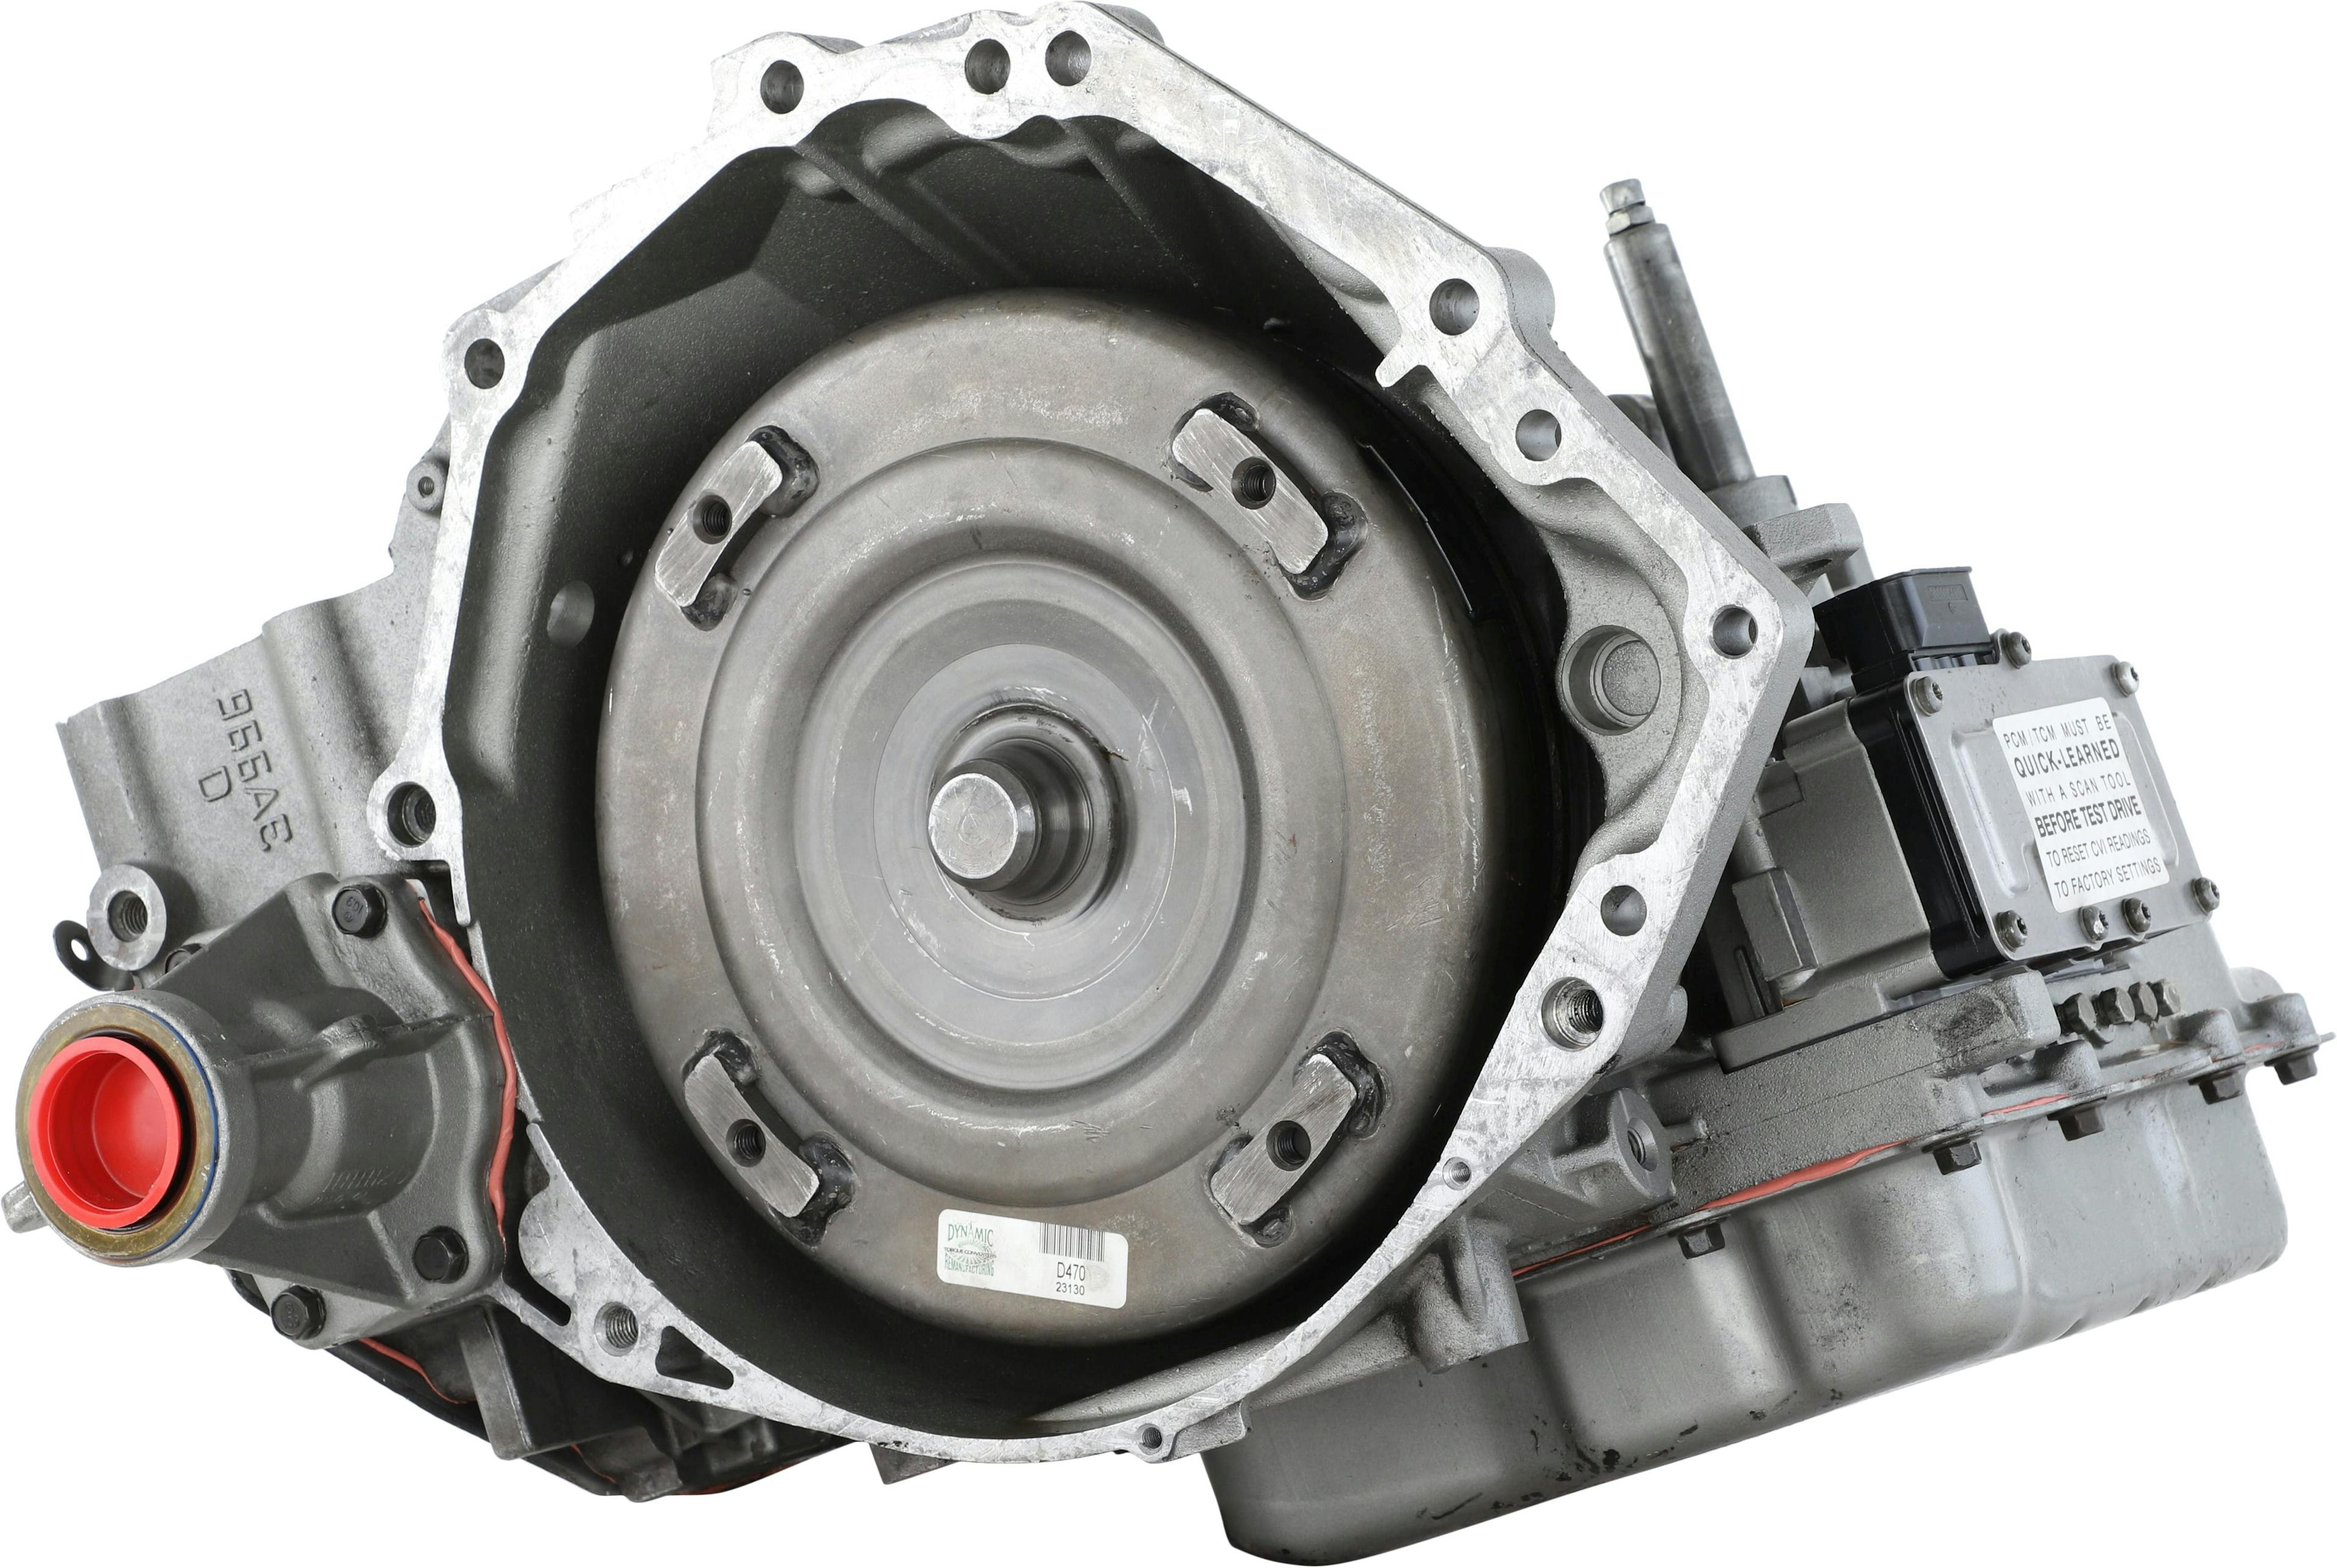 Automatic Transmission for 2009-2010 Chrysler Sebring/Dodge Avenger FWD with 2.7L V6 Engine